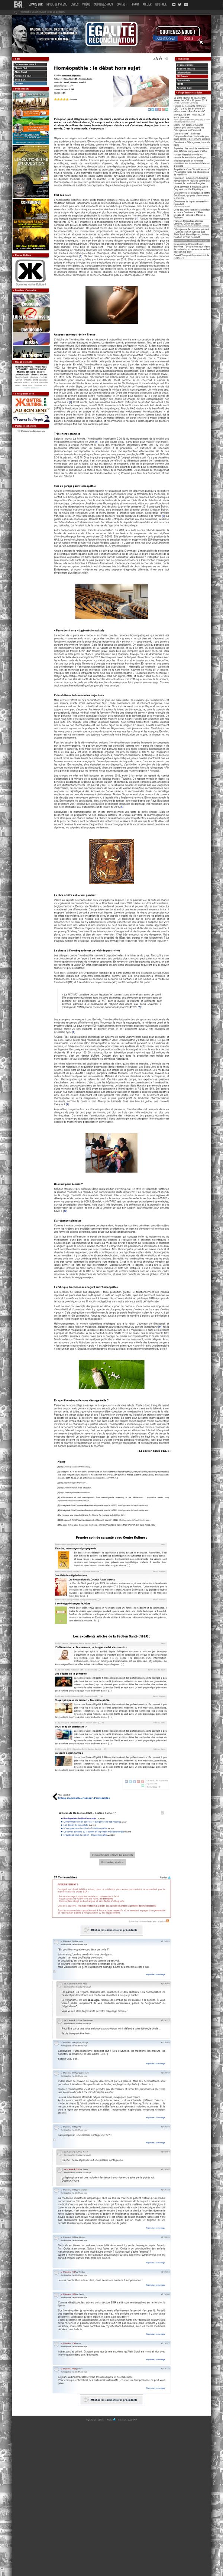 egaliteetreconciliation.fr/Homeopathie-le-debat-hors-sujet-53664.html